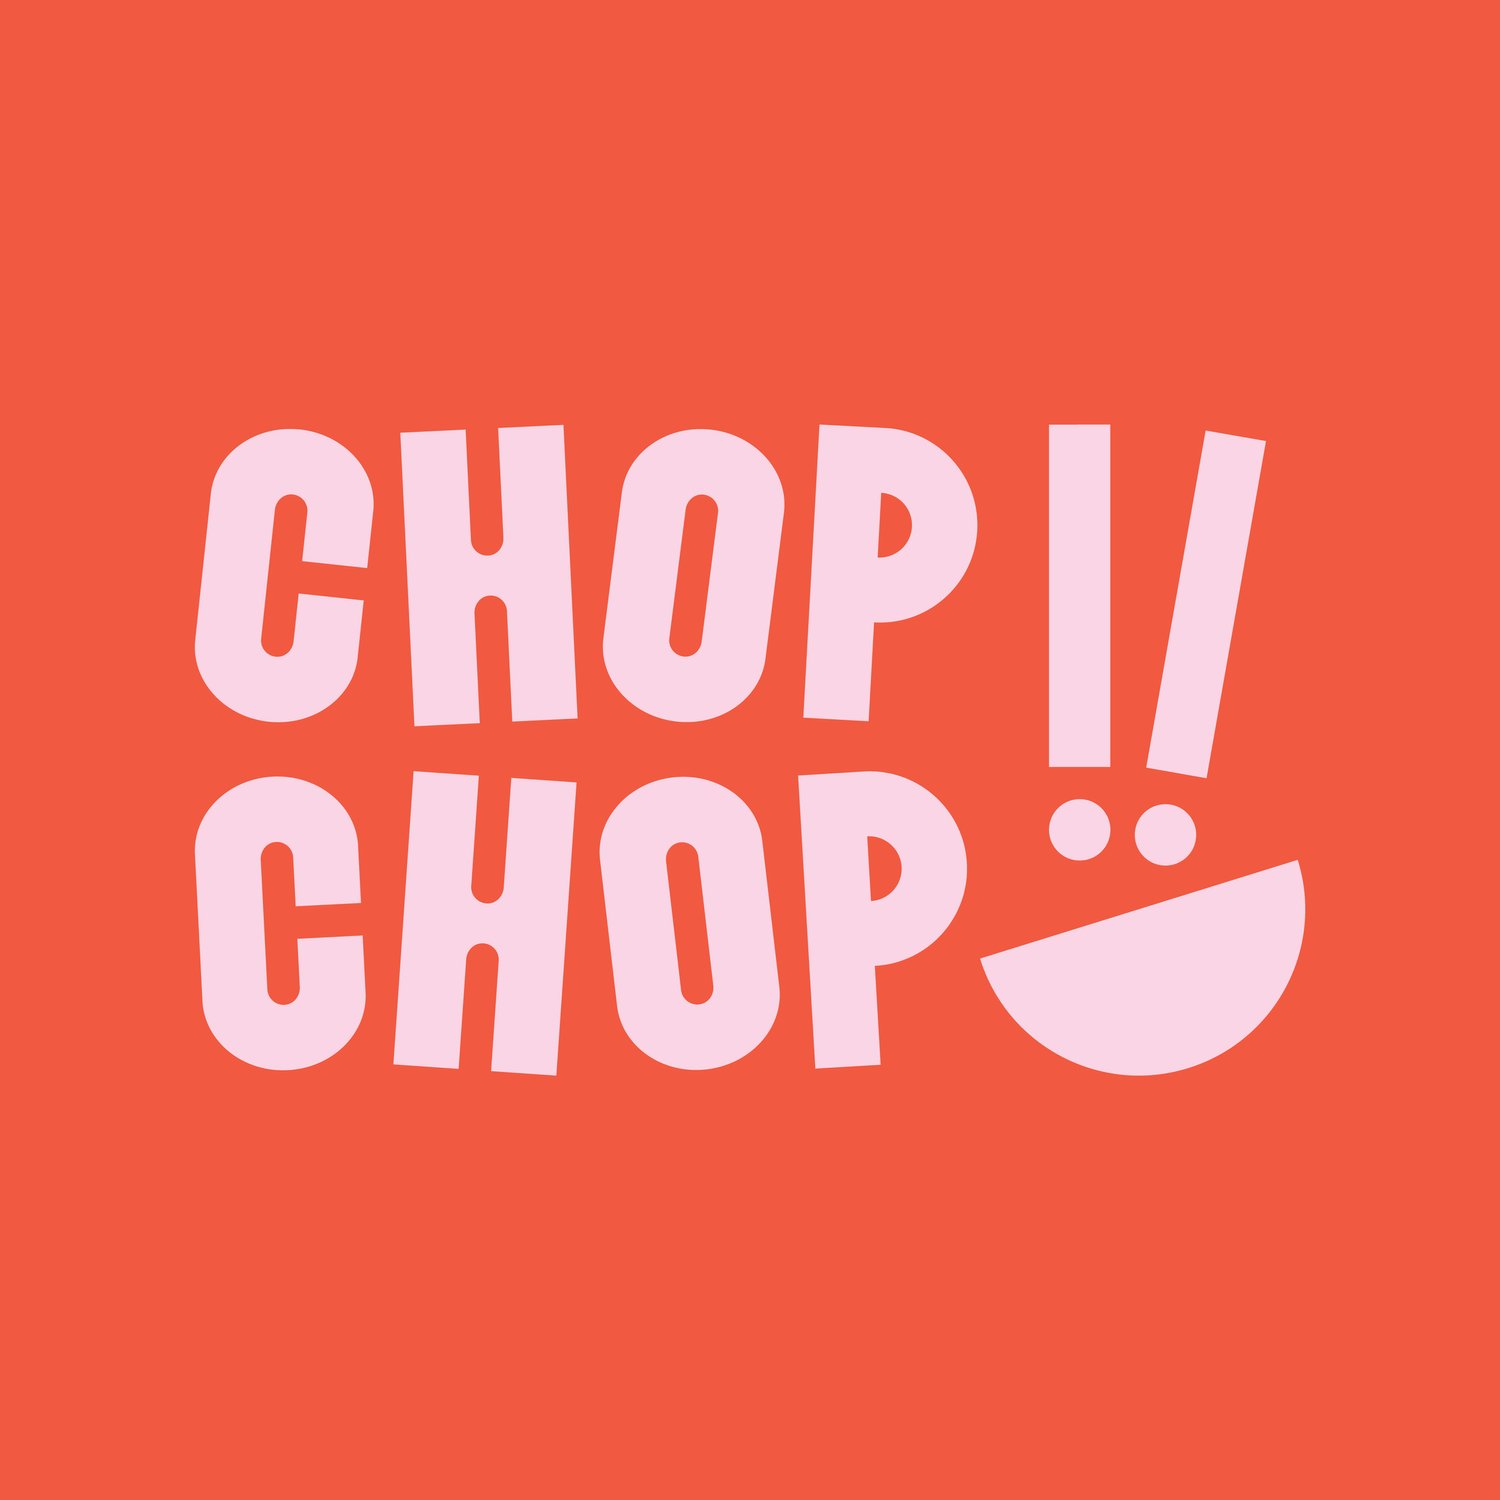 chop chop liverpool